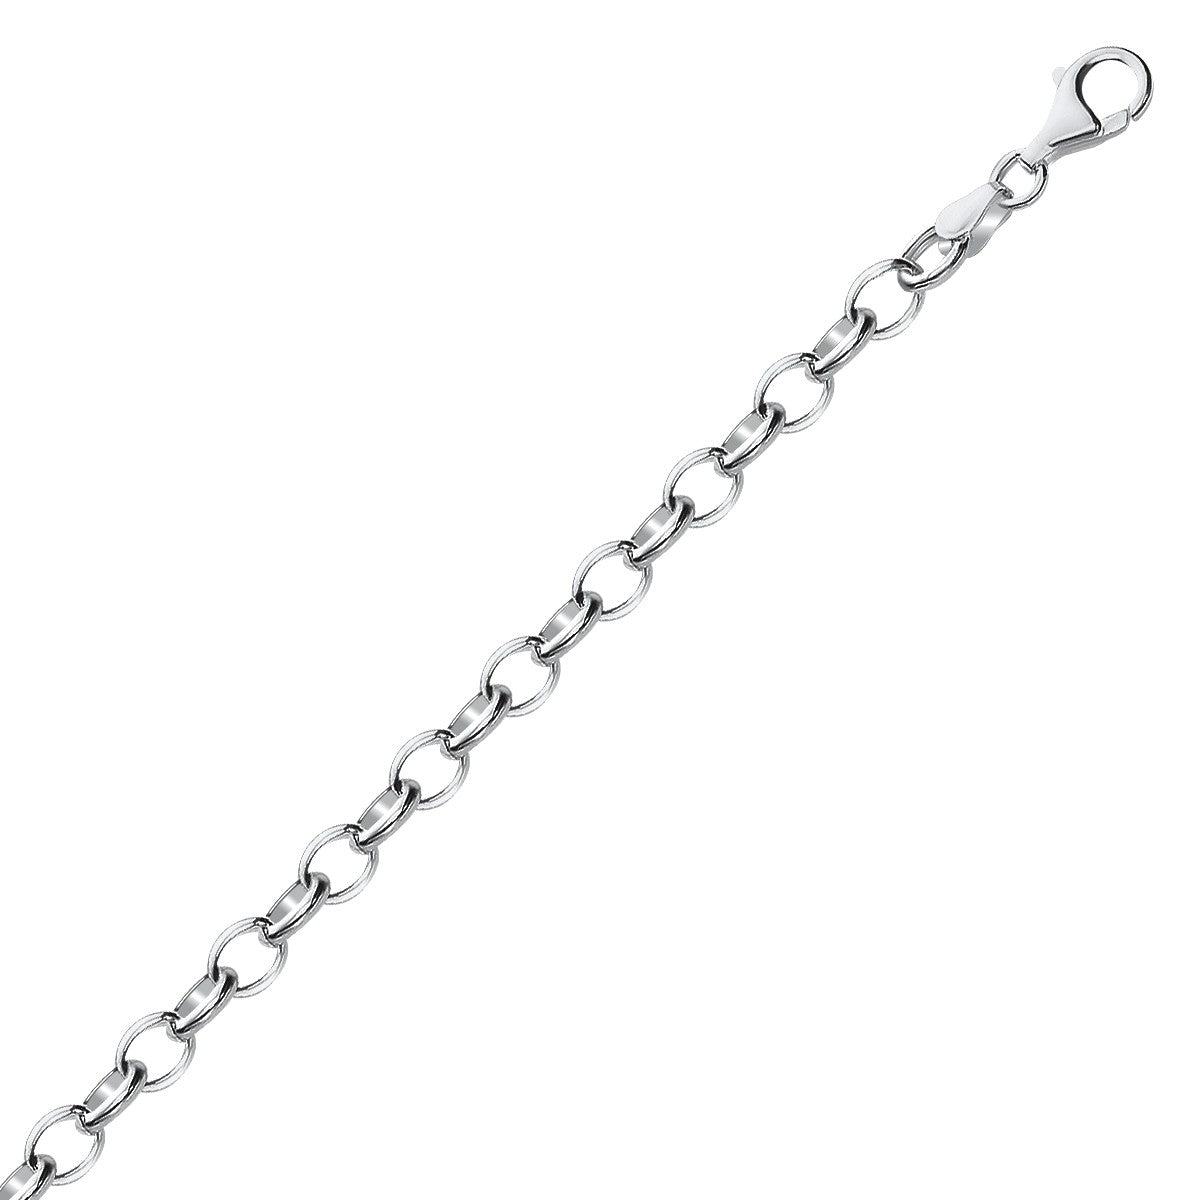 Polished Charm Bracelet - Sterling Silver 5.10mm